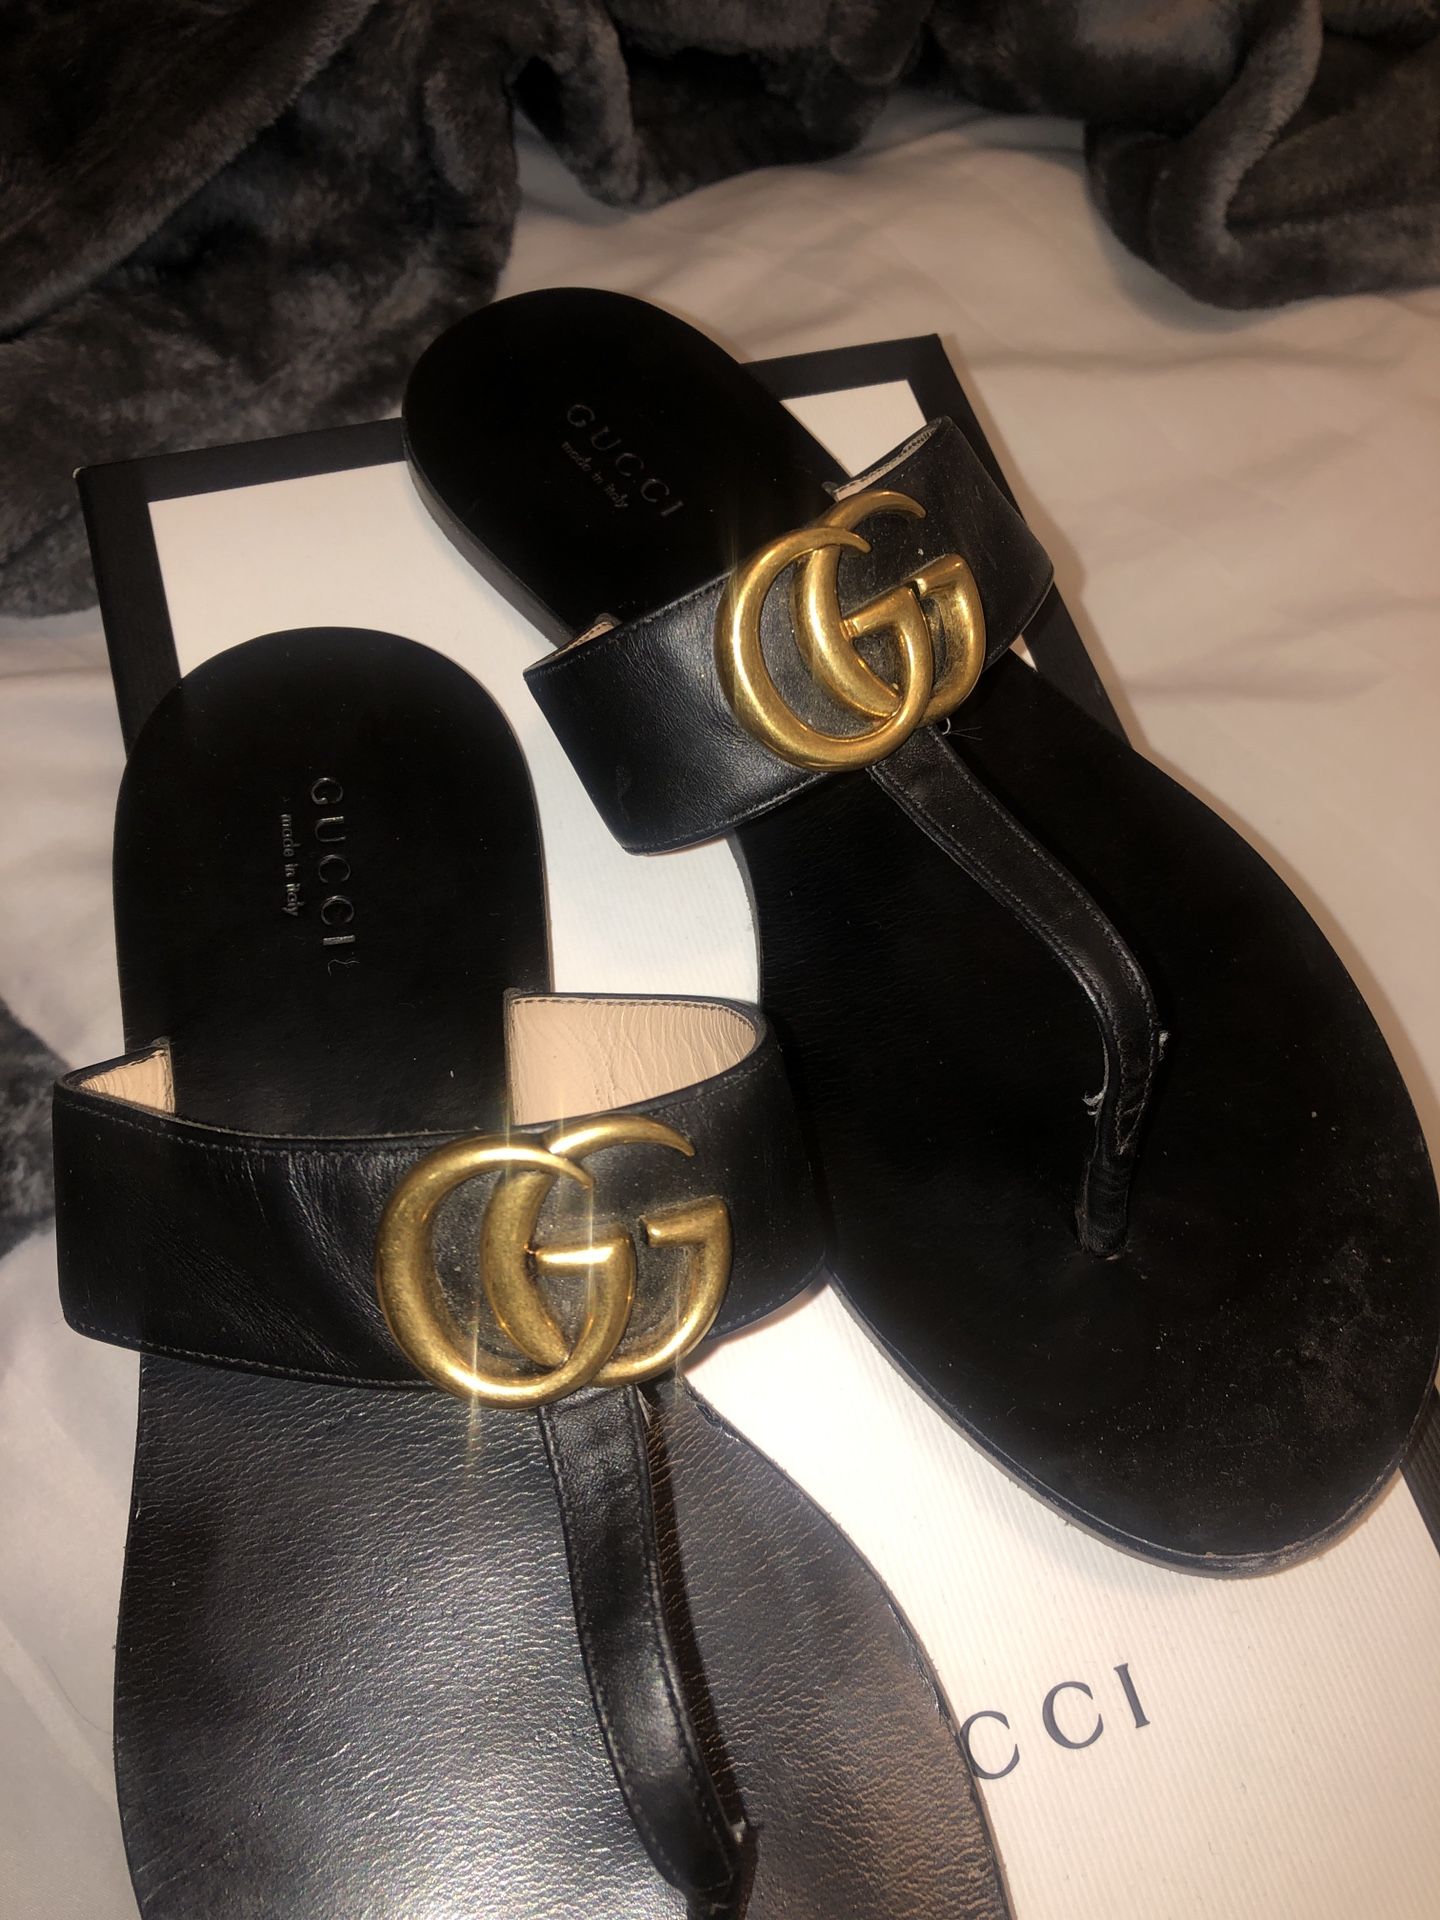 Gucci sandals size 8 women’s